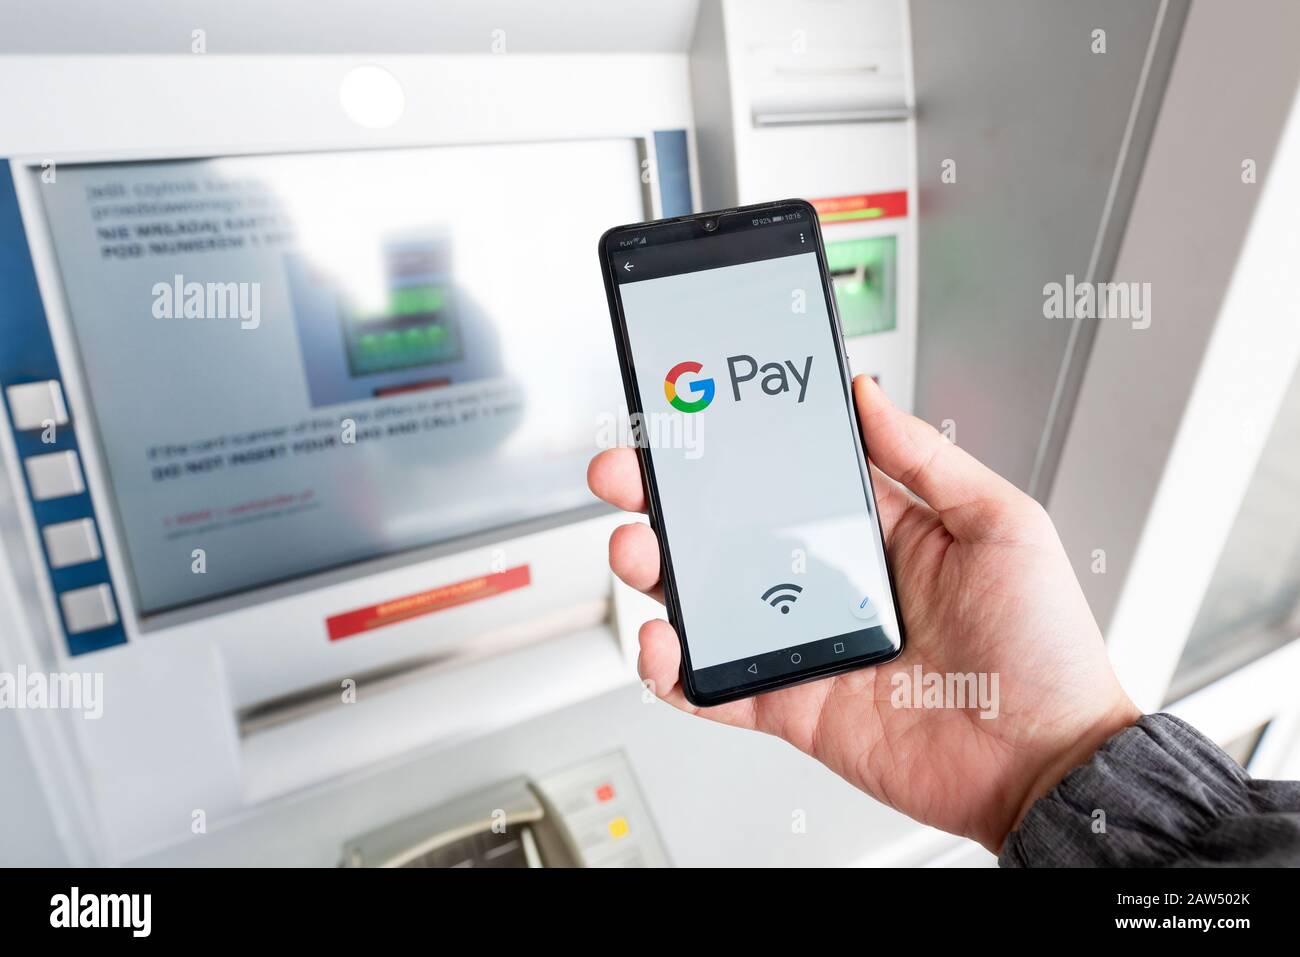 Wroclaw, Pologne - NOV 06, 2019 : Man holding smartphone avec Google payer logo. Payer Google portefeuille électronique est développé par Google. Banque D'Images